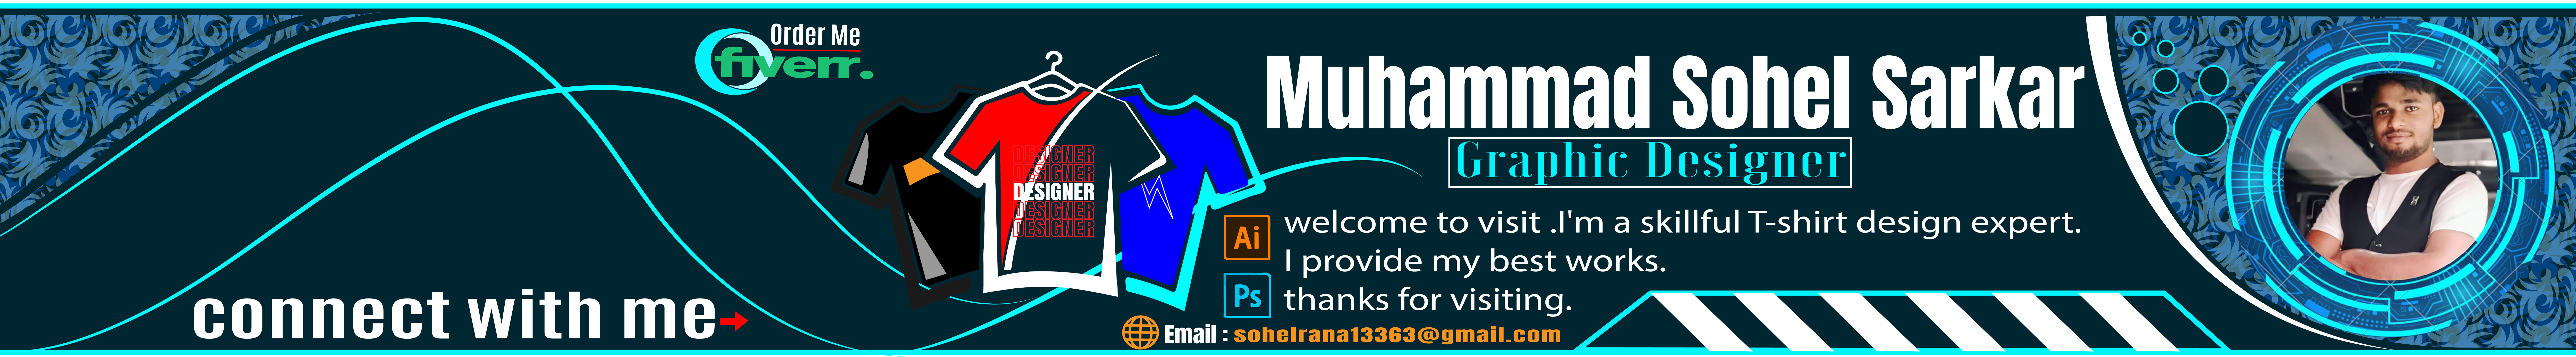 Bannière de profil de Muhammad Sohel Sarkar